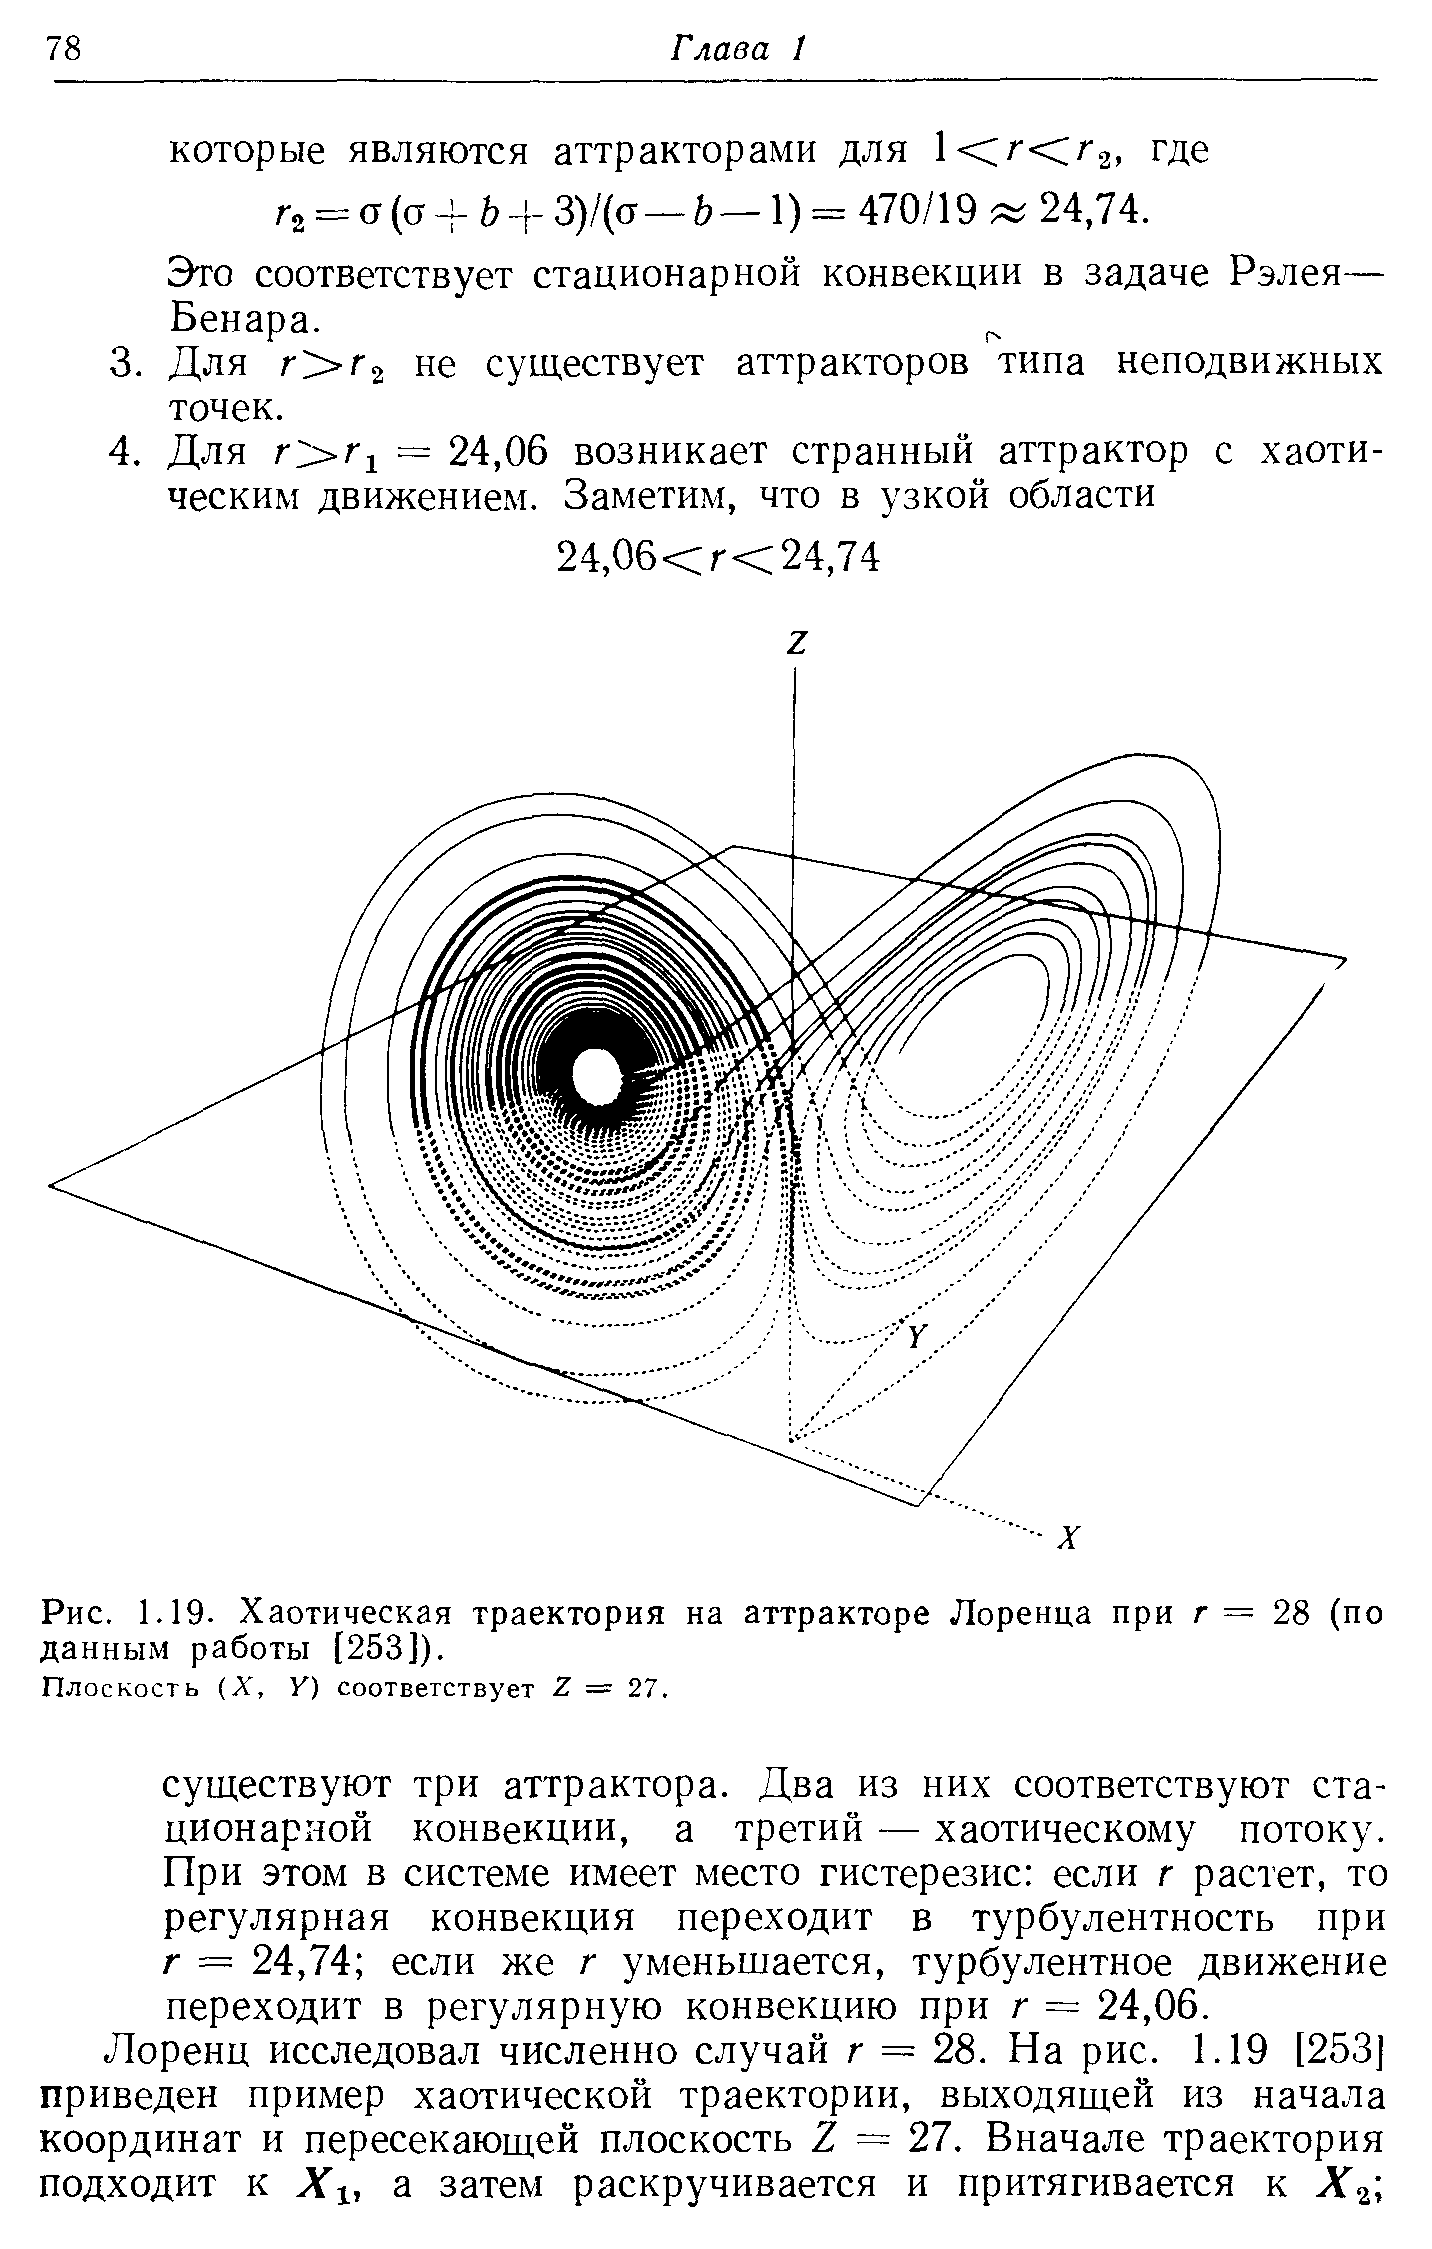 Рис. 1.19. Хаотическая траектория на аттракторе Лоренца при г = 28 (по данным работы [253]).
